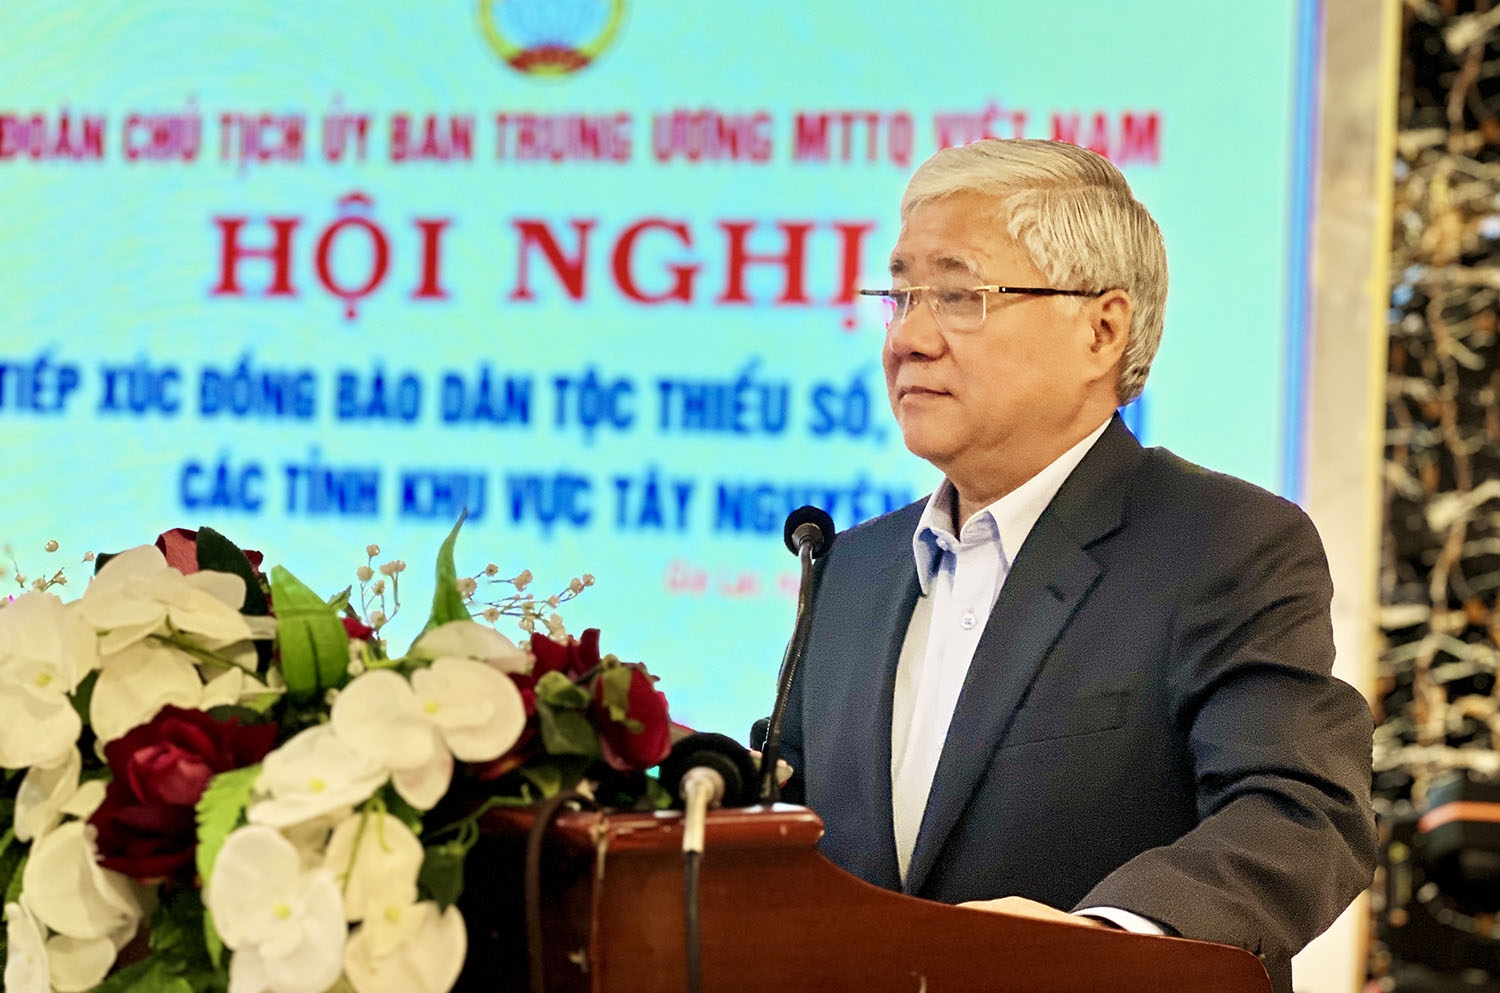 Chủ tịch Ủy ban Trung ương MTTQ Việt Nam Đỗ Văn Chiến bày tỏ sự đồng cảm, thấu hiểu và chia sẻ với những mong muốn, nguyện vọng chính đáng của các đại biểu 5 tỉnh Tây Nguyên